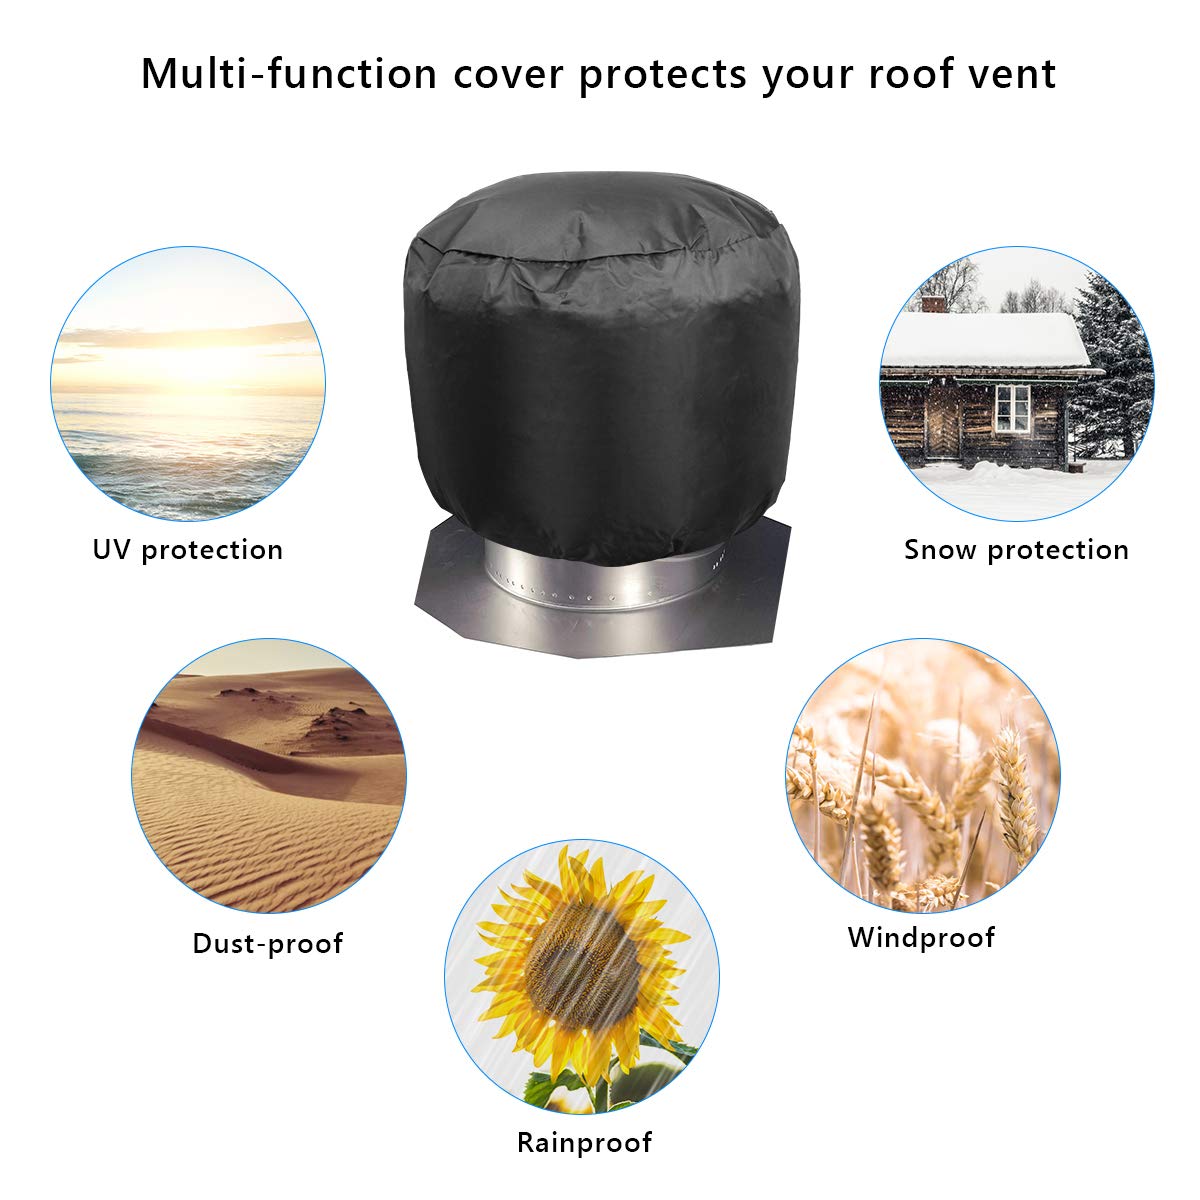 Turbine Vent Cover, Luxiv Black Roof Ventilator Cover Waterproof Turbine Roof Cover 420D Oxford Cloth Turbine Ventilator Cover (20D x 20W)